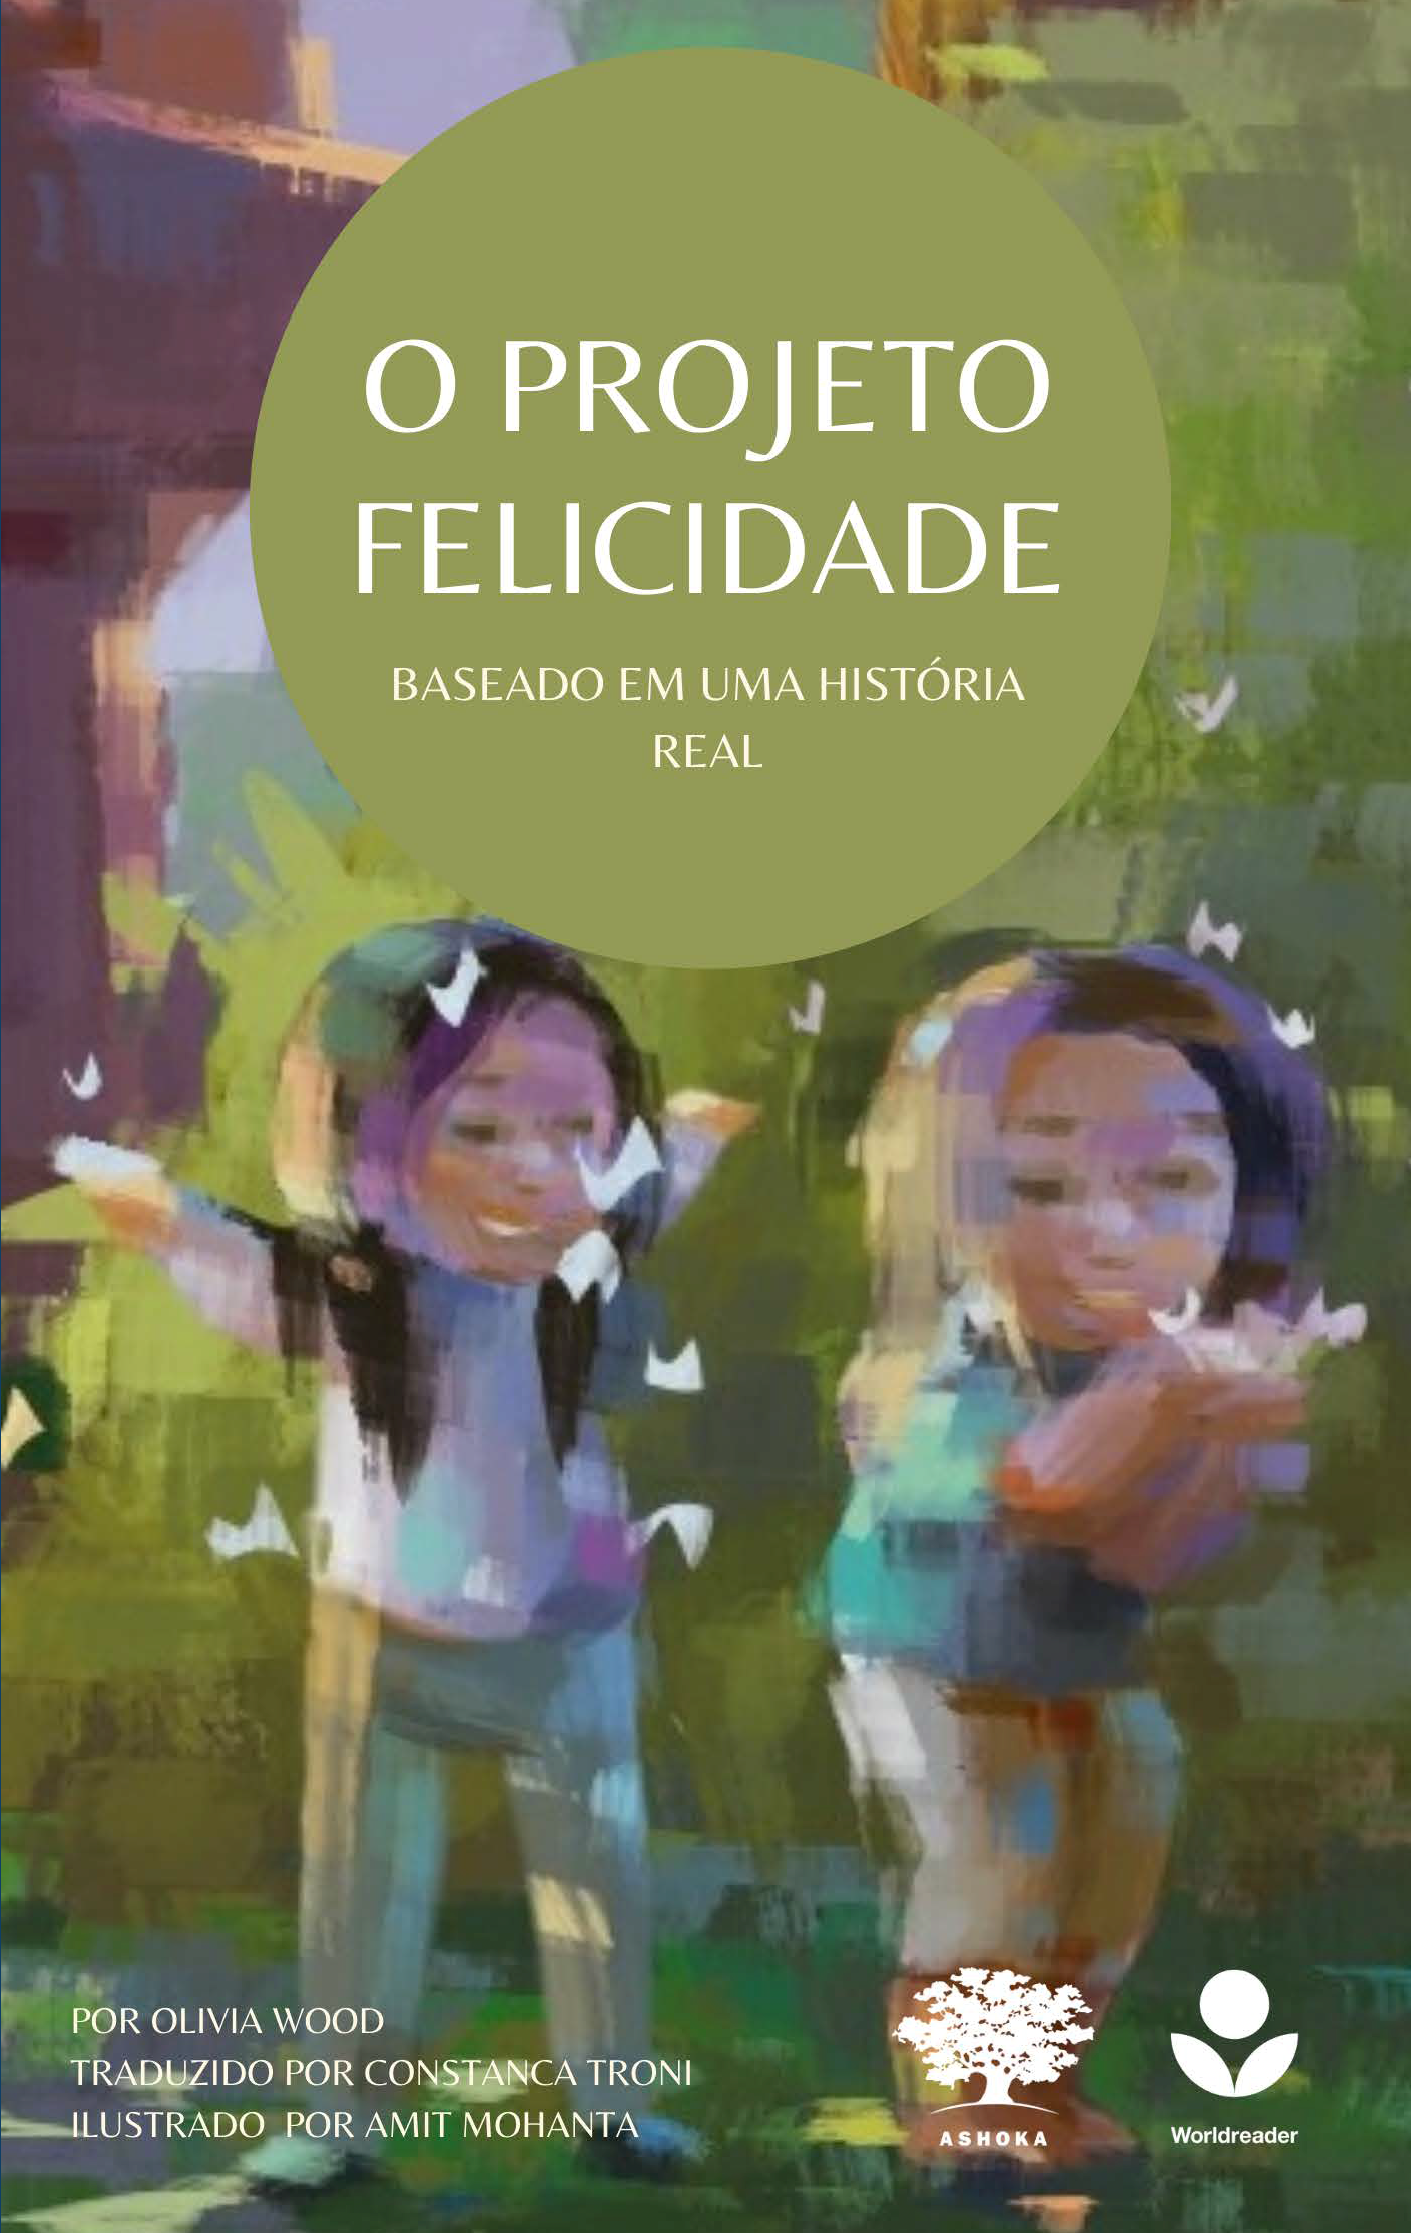 Capa do livro "O Projeto Felicidade". Há uma ilustração de duas garotas brincando em um quintal. Há silhuetas de borboletas ao seu redor.